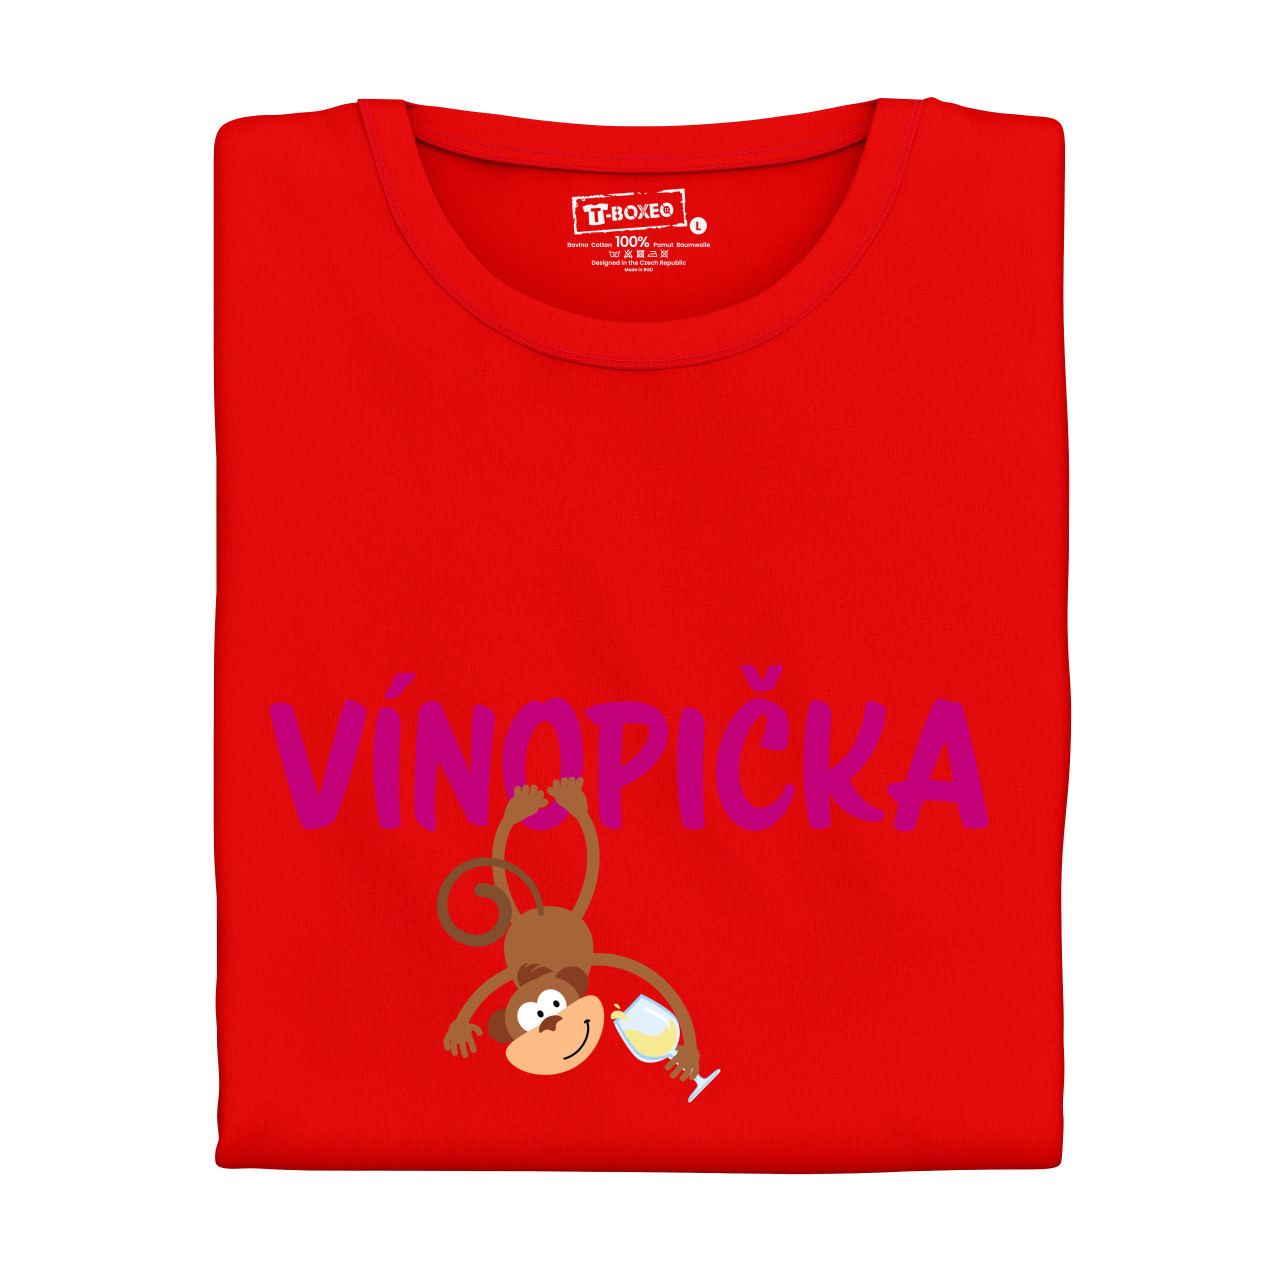 Dámské tričko s potiskem “Vínopička - bílé víno”